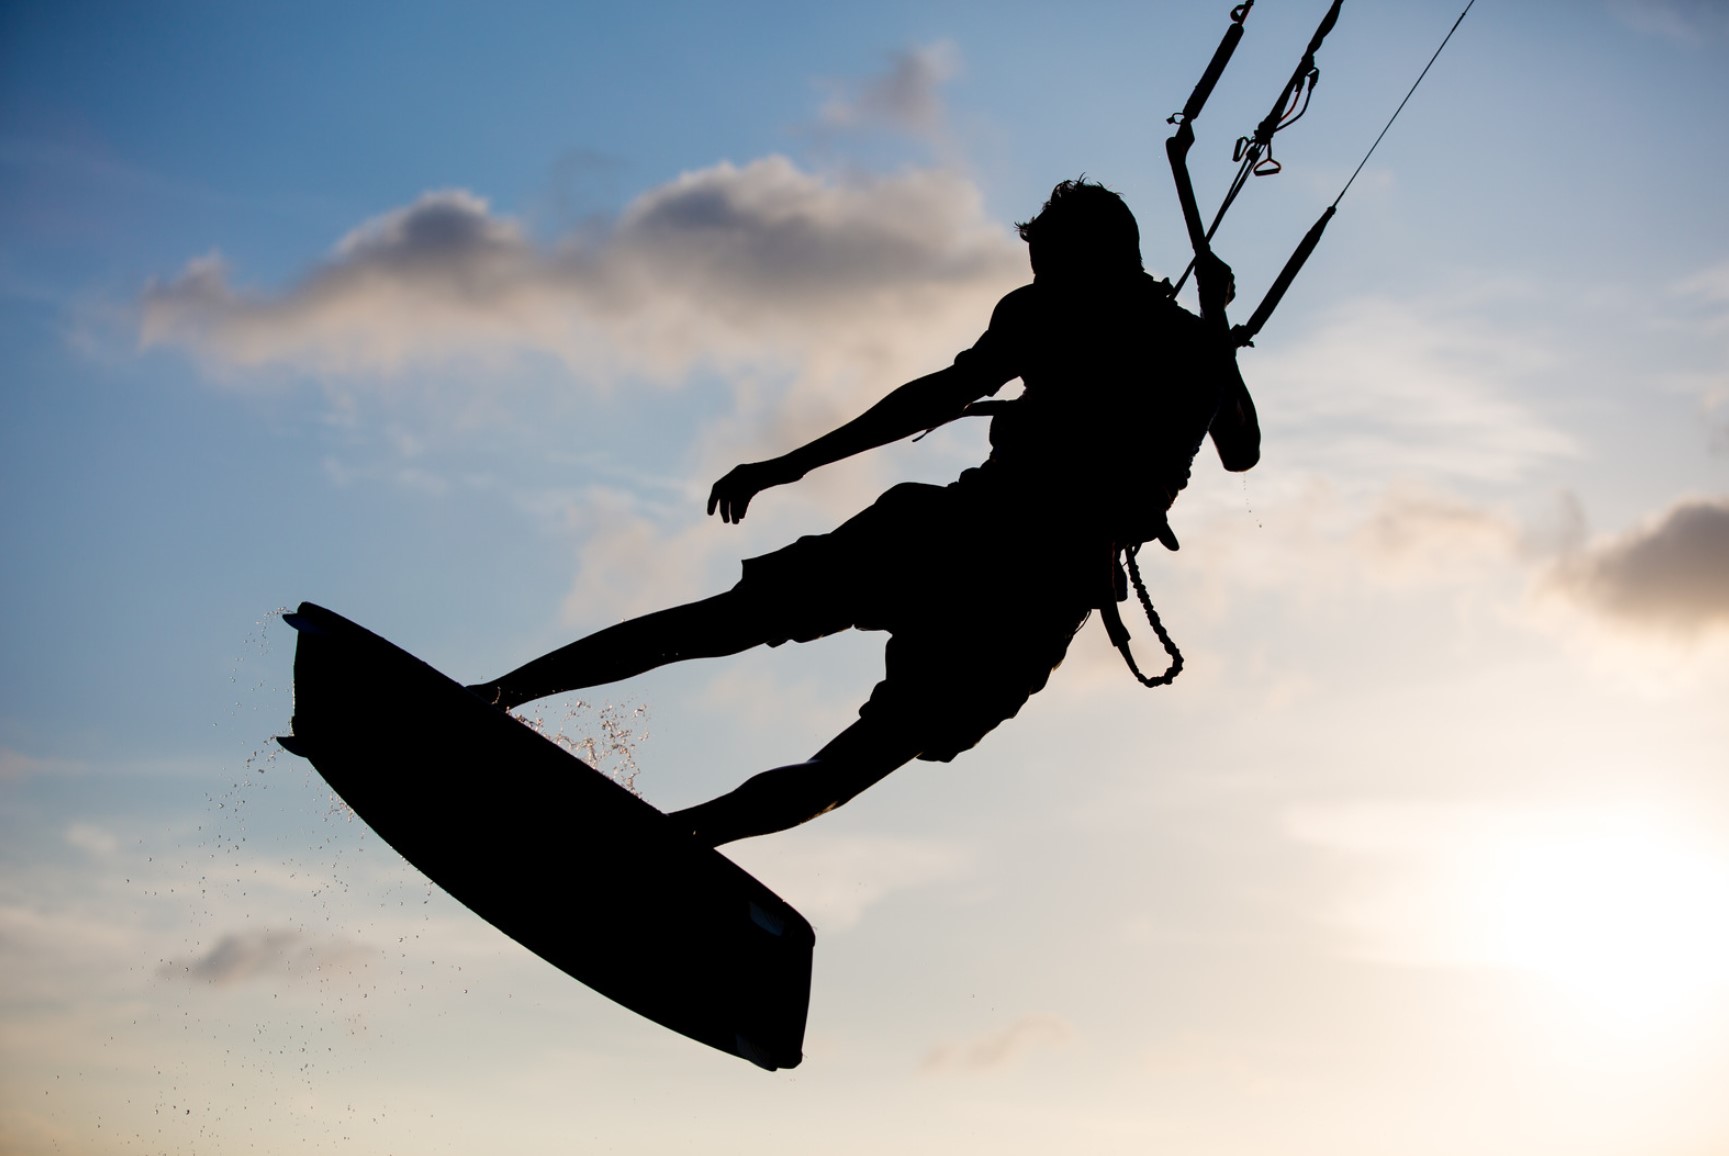 Podstawy windsurfingu: Jak zacząć swoją przygodę z tym sportem?